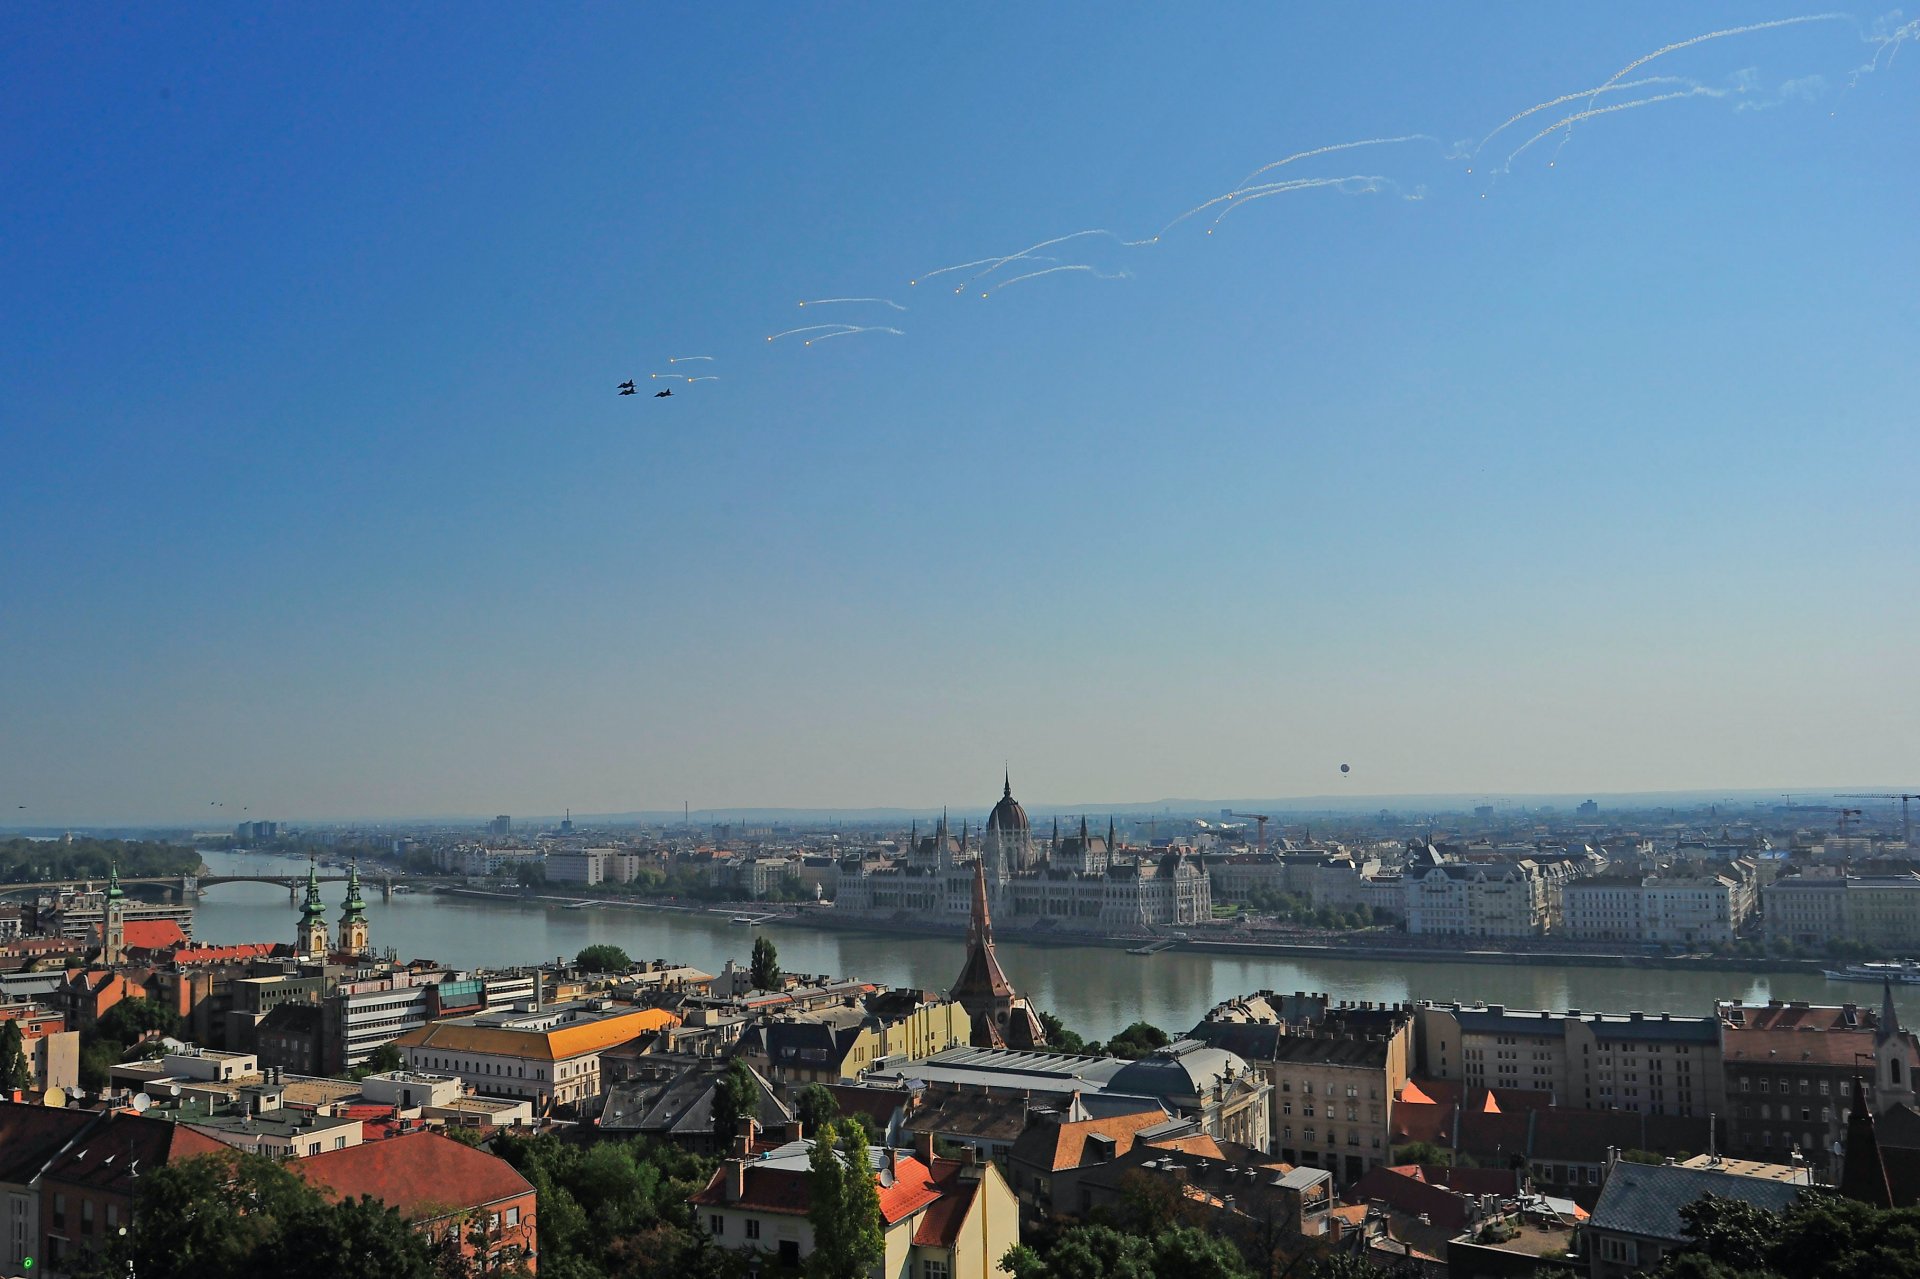 Magyar Honvédség JAS-39 harcászati repülõgép díszelgõ áthúzása (infracsapda kijuttatásával) a Duna felett az államalapítás ünnepe alkalmából rendezett légi parádén 2023. augusztus 20-án.